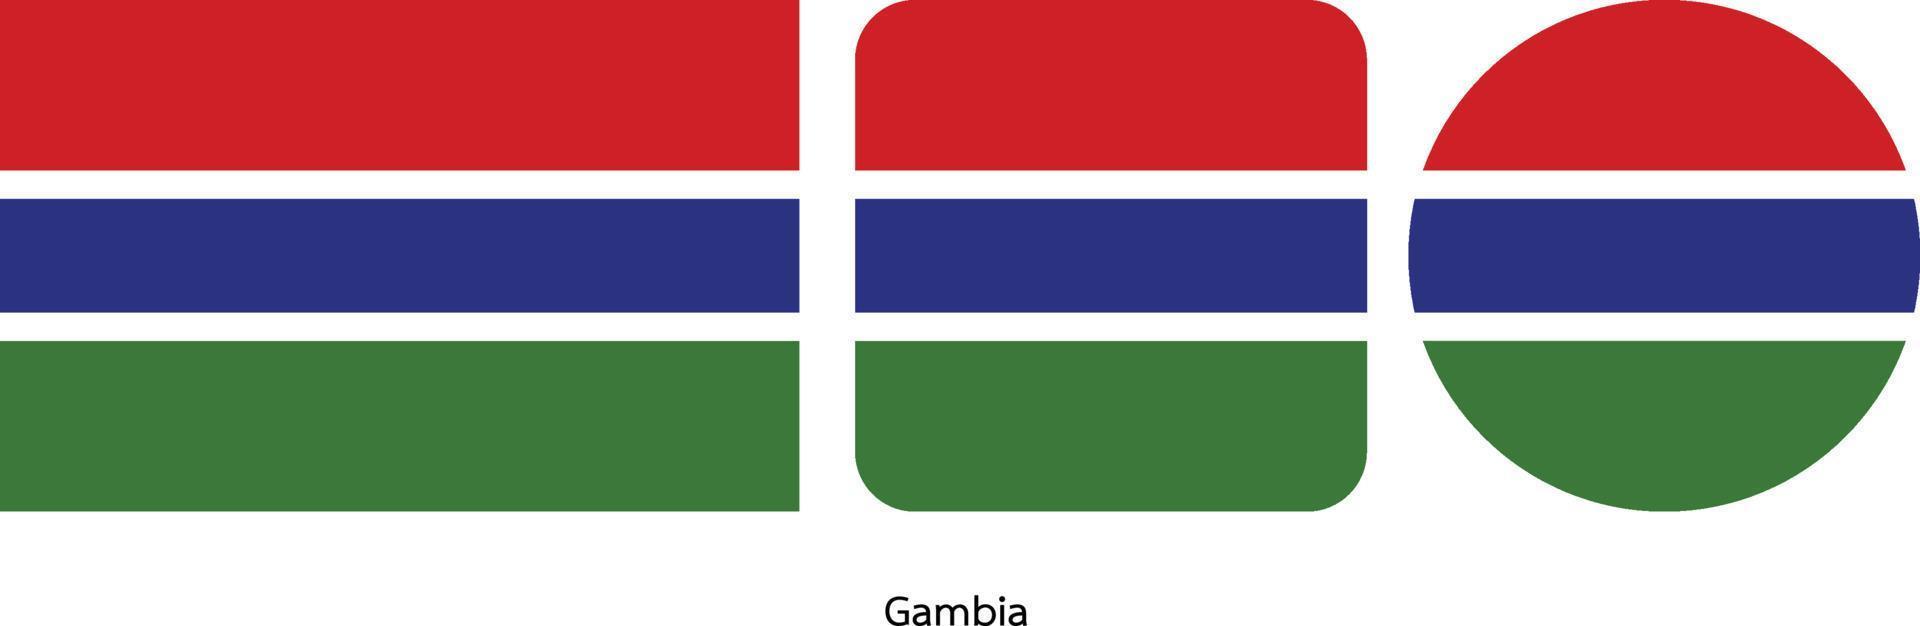 Gambia-Flagge, Vektorillustration vektor